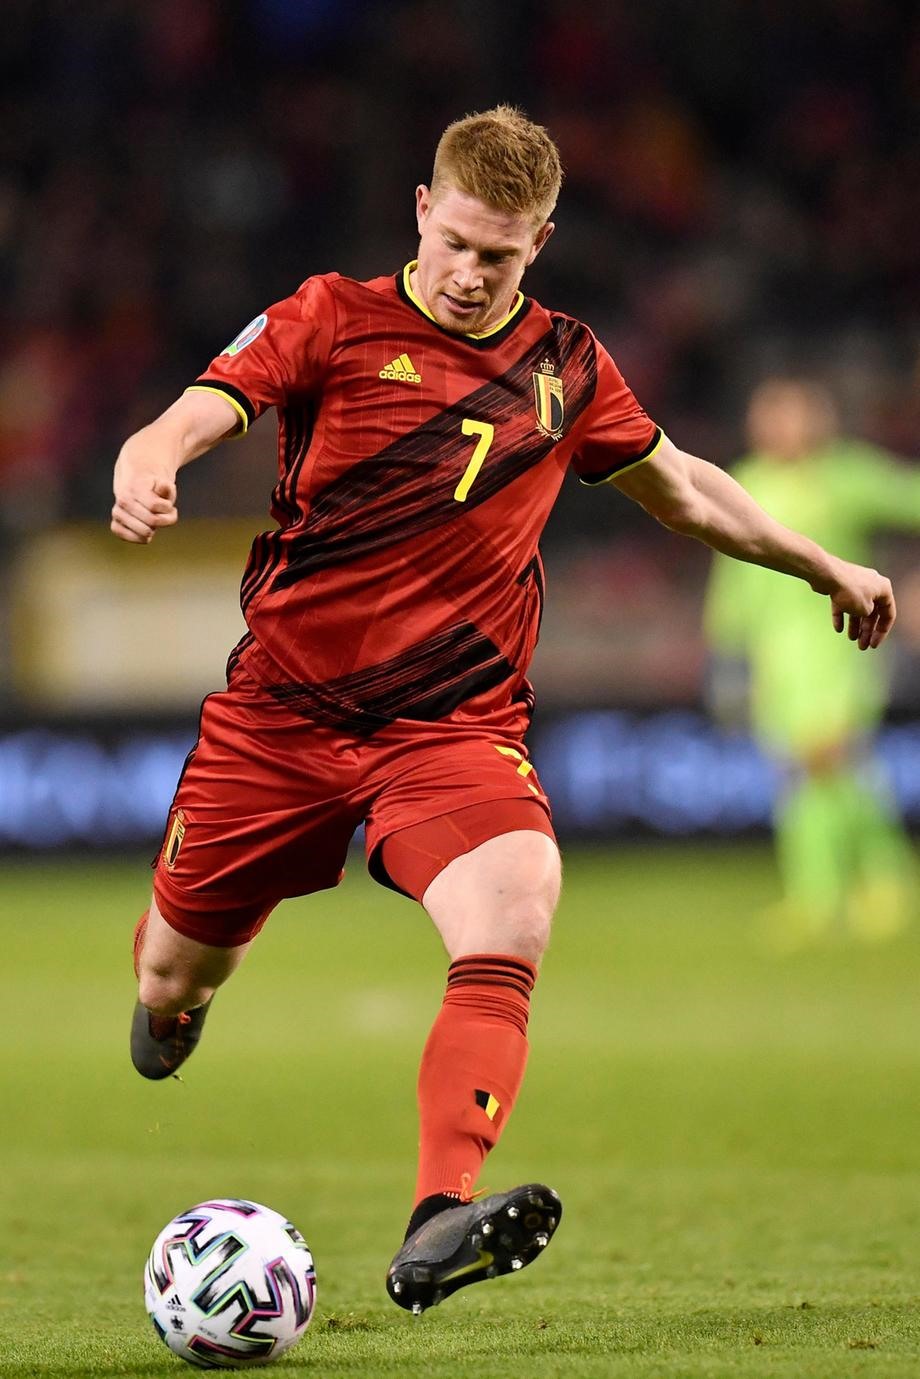 Kevin de Bruyne (Bỉ, 100 triệu euro): Tài năng của De Bruyne được đánh giá rất cao khi anh giúp Man City đoạt cú đúp danh hiệu mùa vừa qua. Chân chuyền này đã bỏ lỡ trận ra quân của tuyển Bỉ ở trận thắng Nga 3-0 do chấn thương ở gò má.